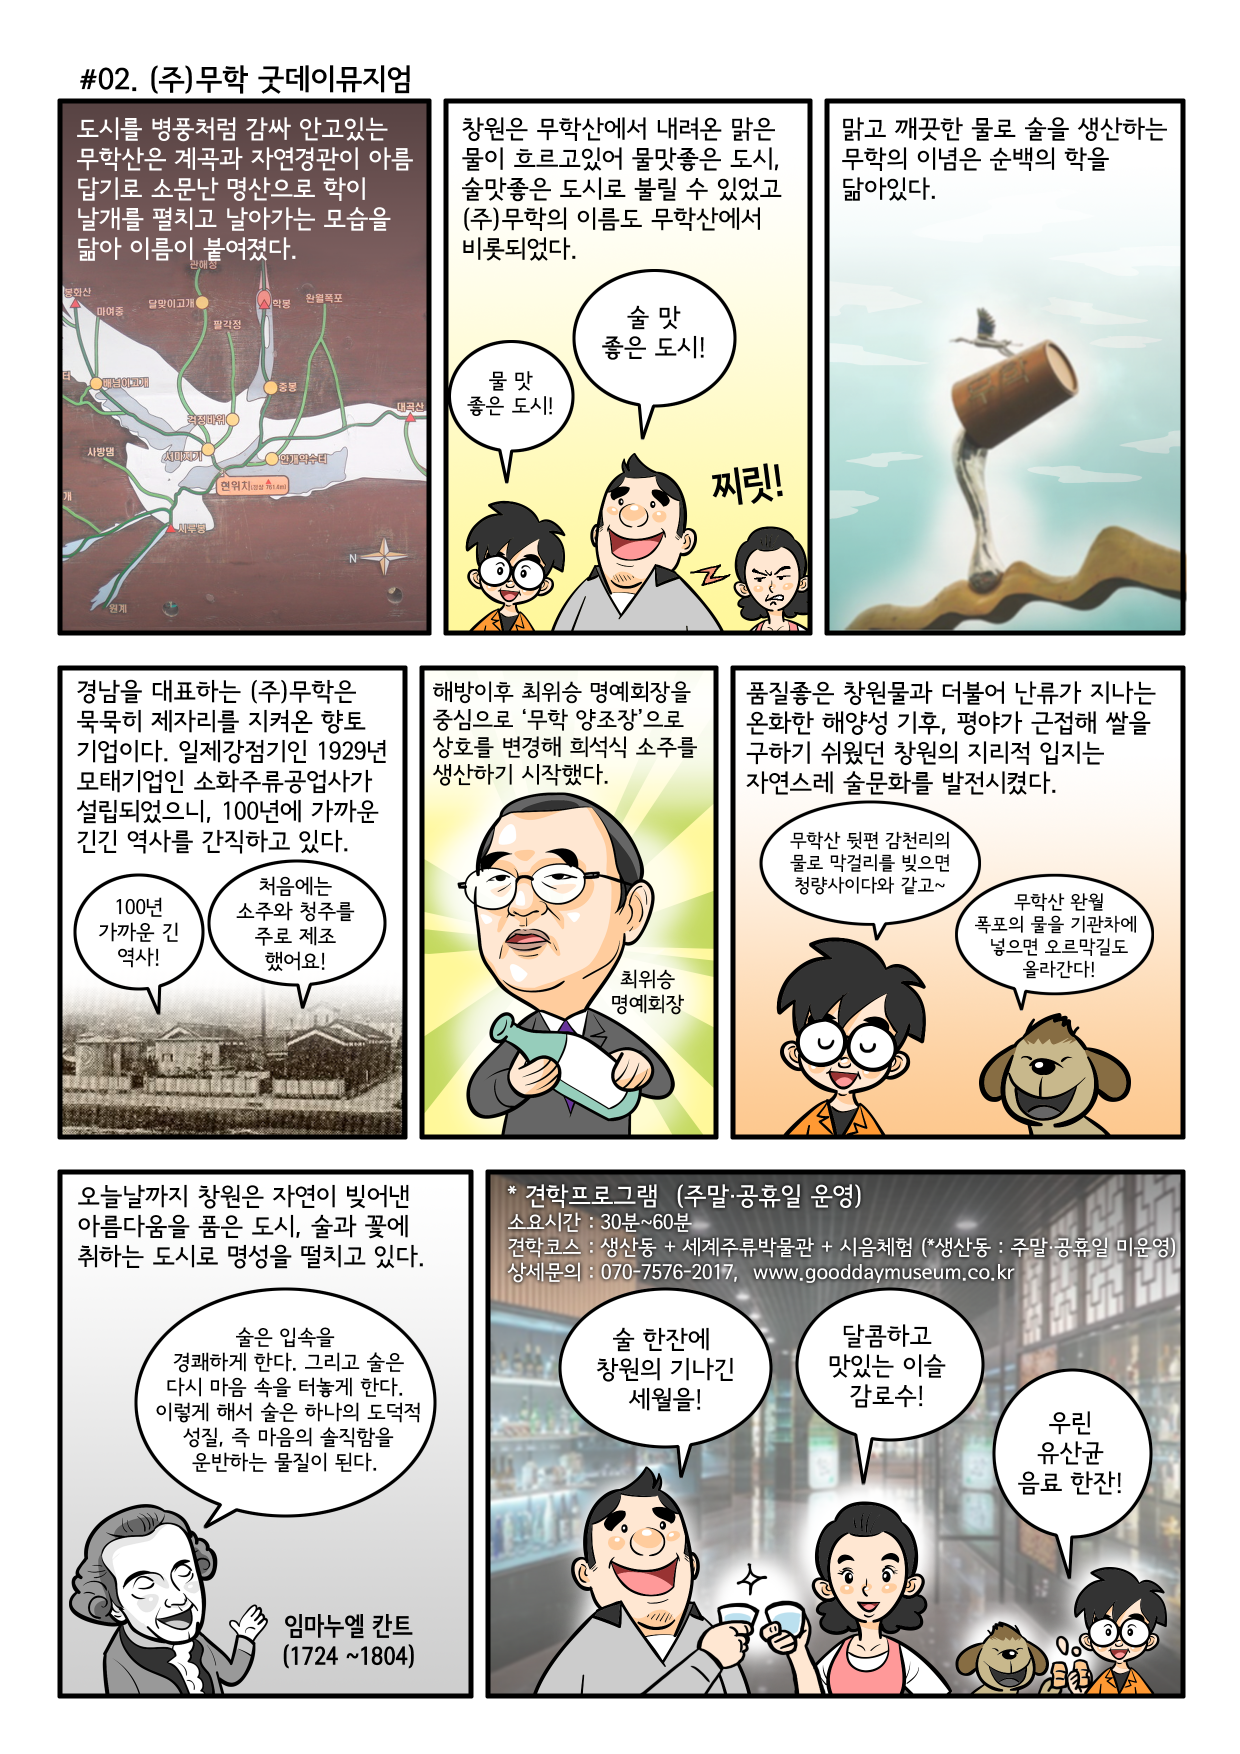 마산자유무역지역홍보관 스토리투어 만화